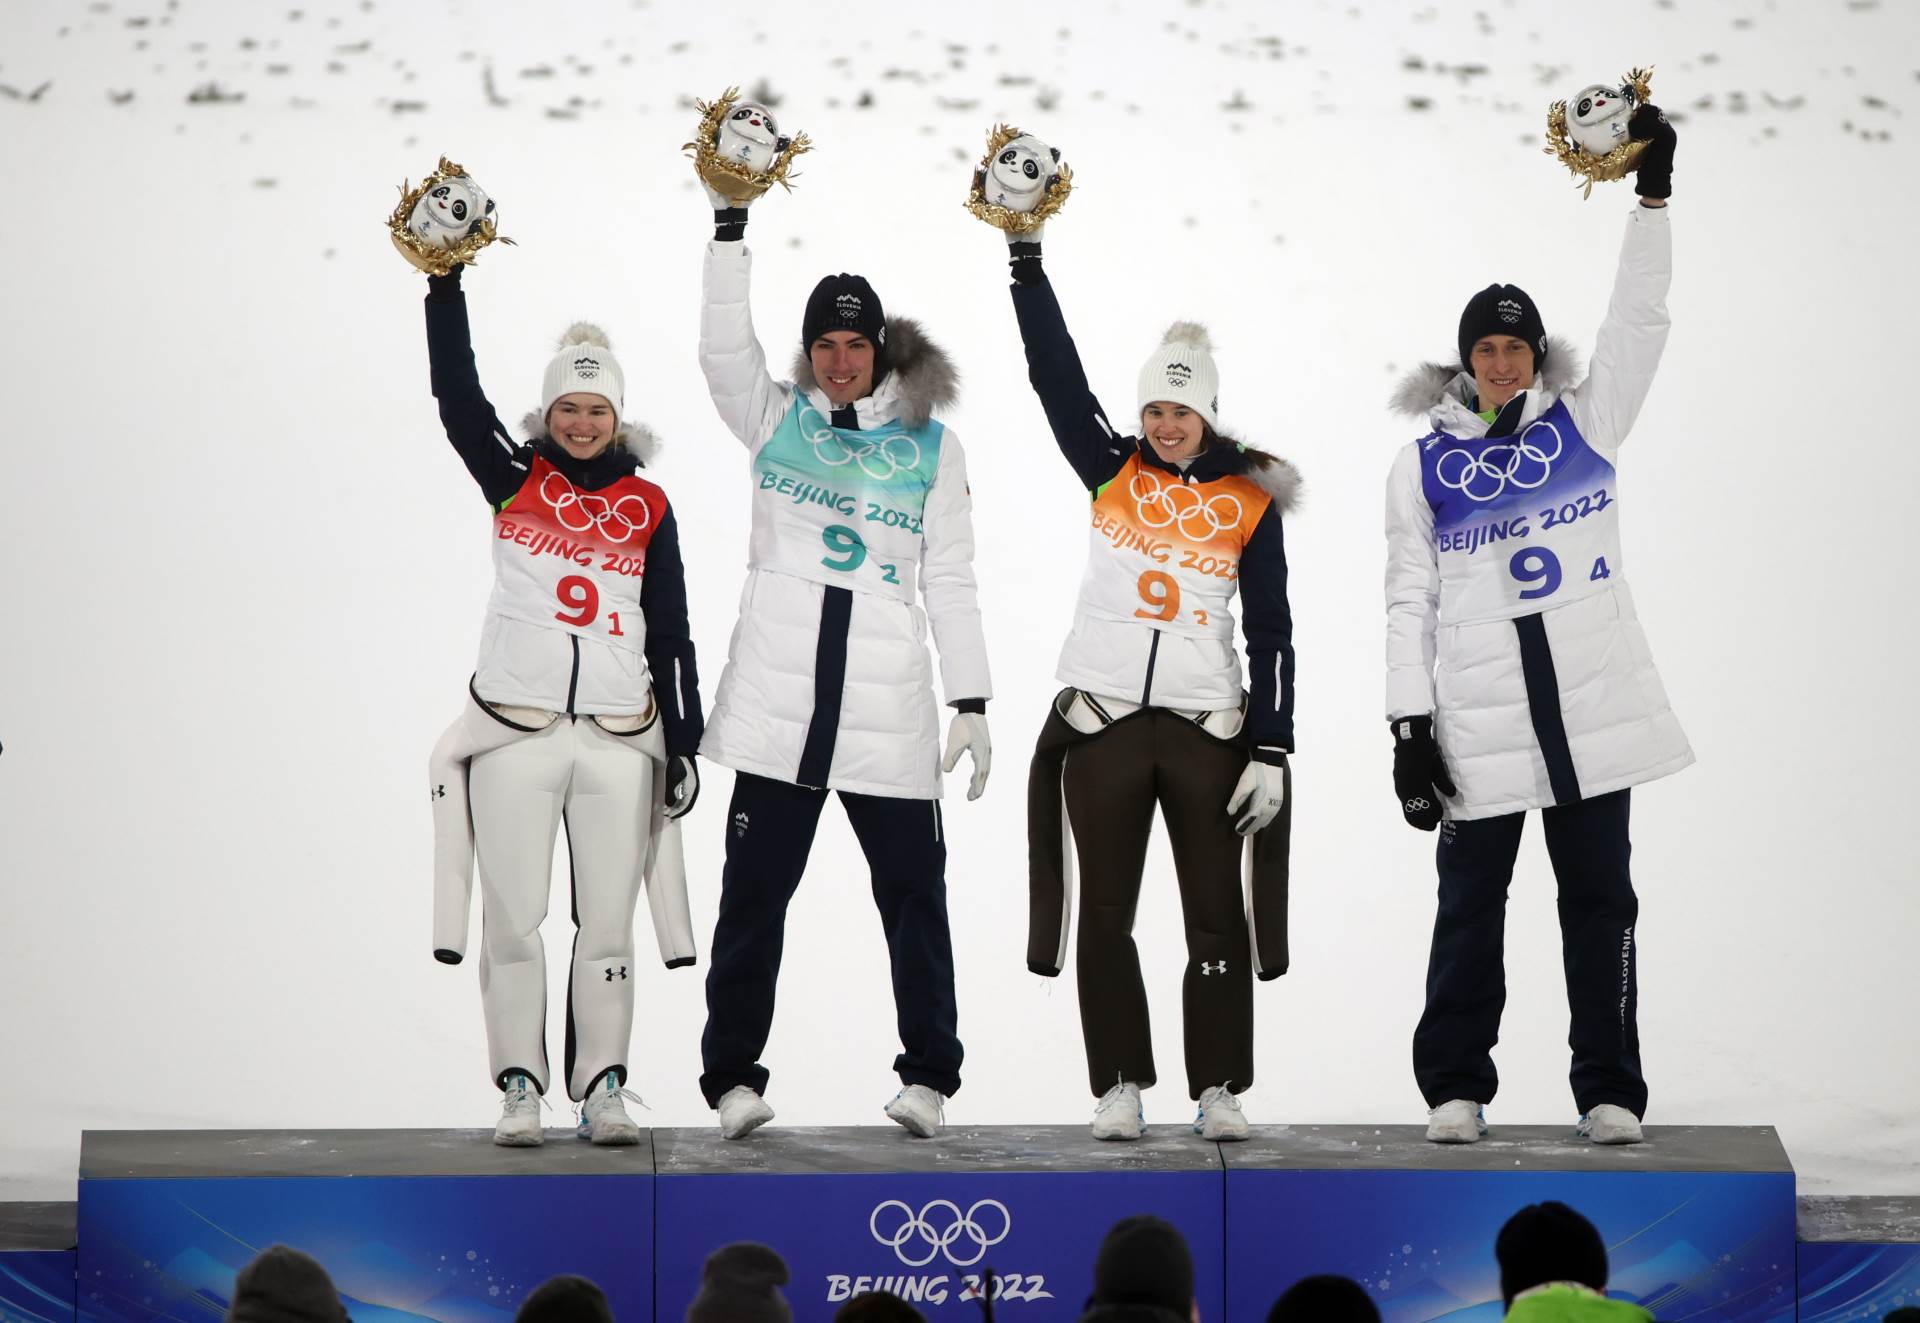  slovenija uzela tri medalje u ski skokovima 